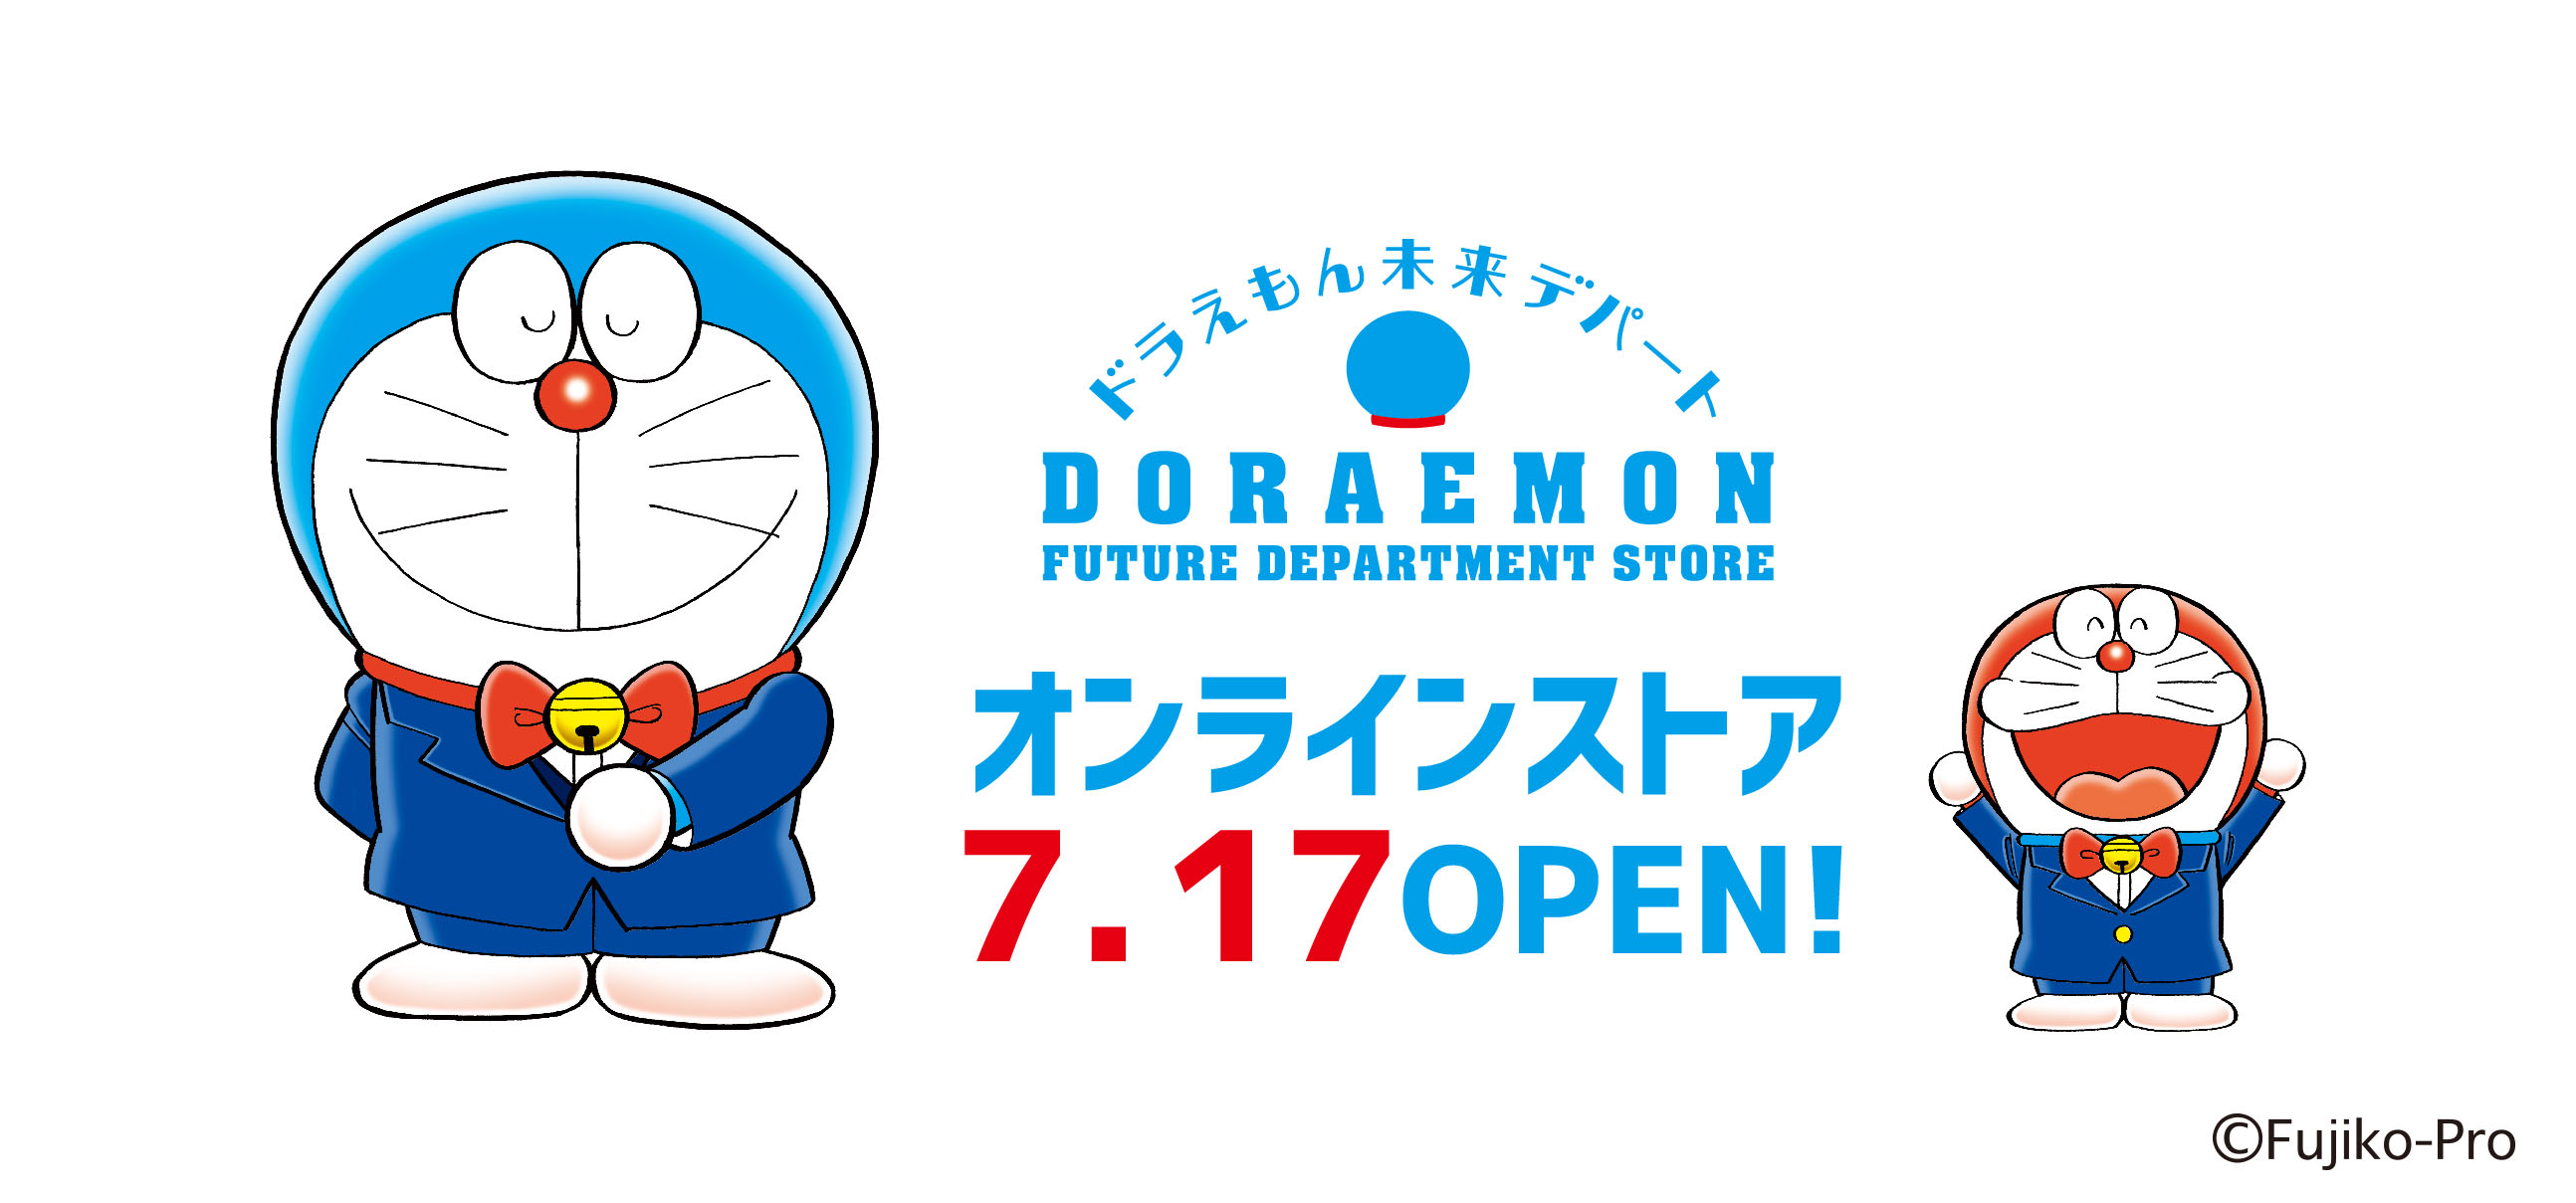 哆啦A夢-ドラえもん未来デパートDoraemon FUTURE DEPARTMENT STORE